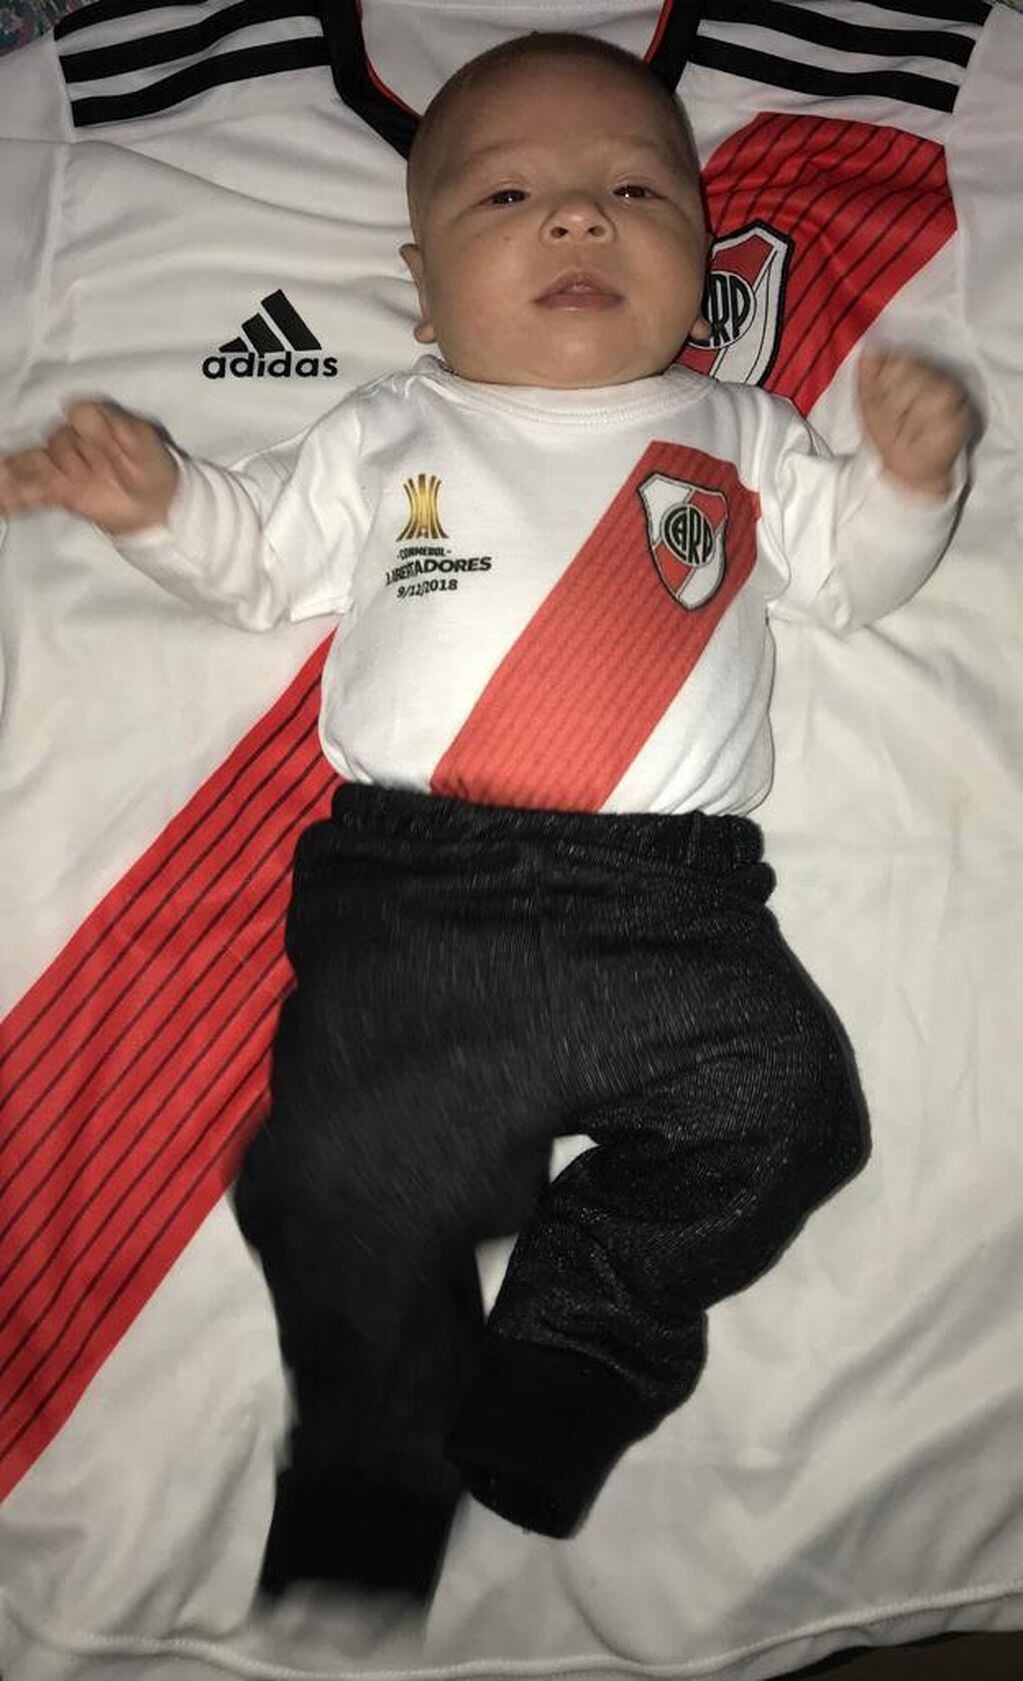 Juanfer vestido para el nuevo festejo de su equipo en la Copa Argentina. Faltan los botines y ¡¡¡a la cancha!!!: (Familia Almonacid y Enríquez)